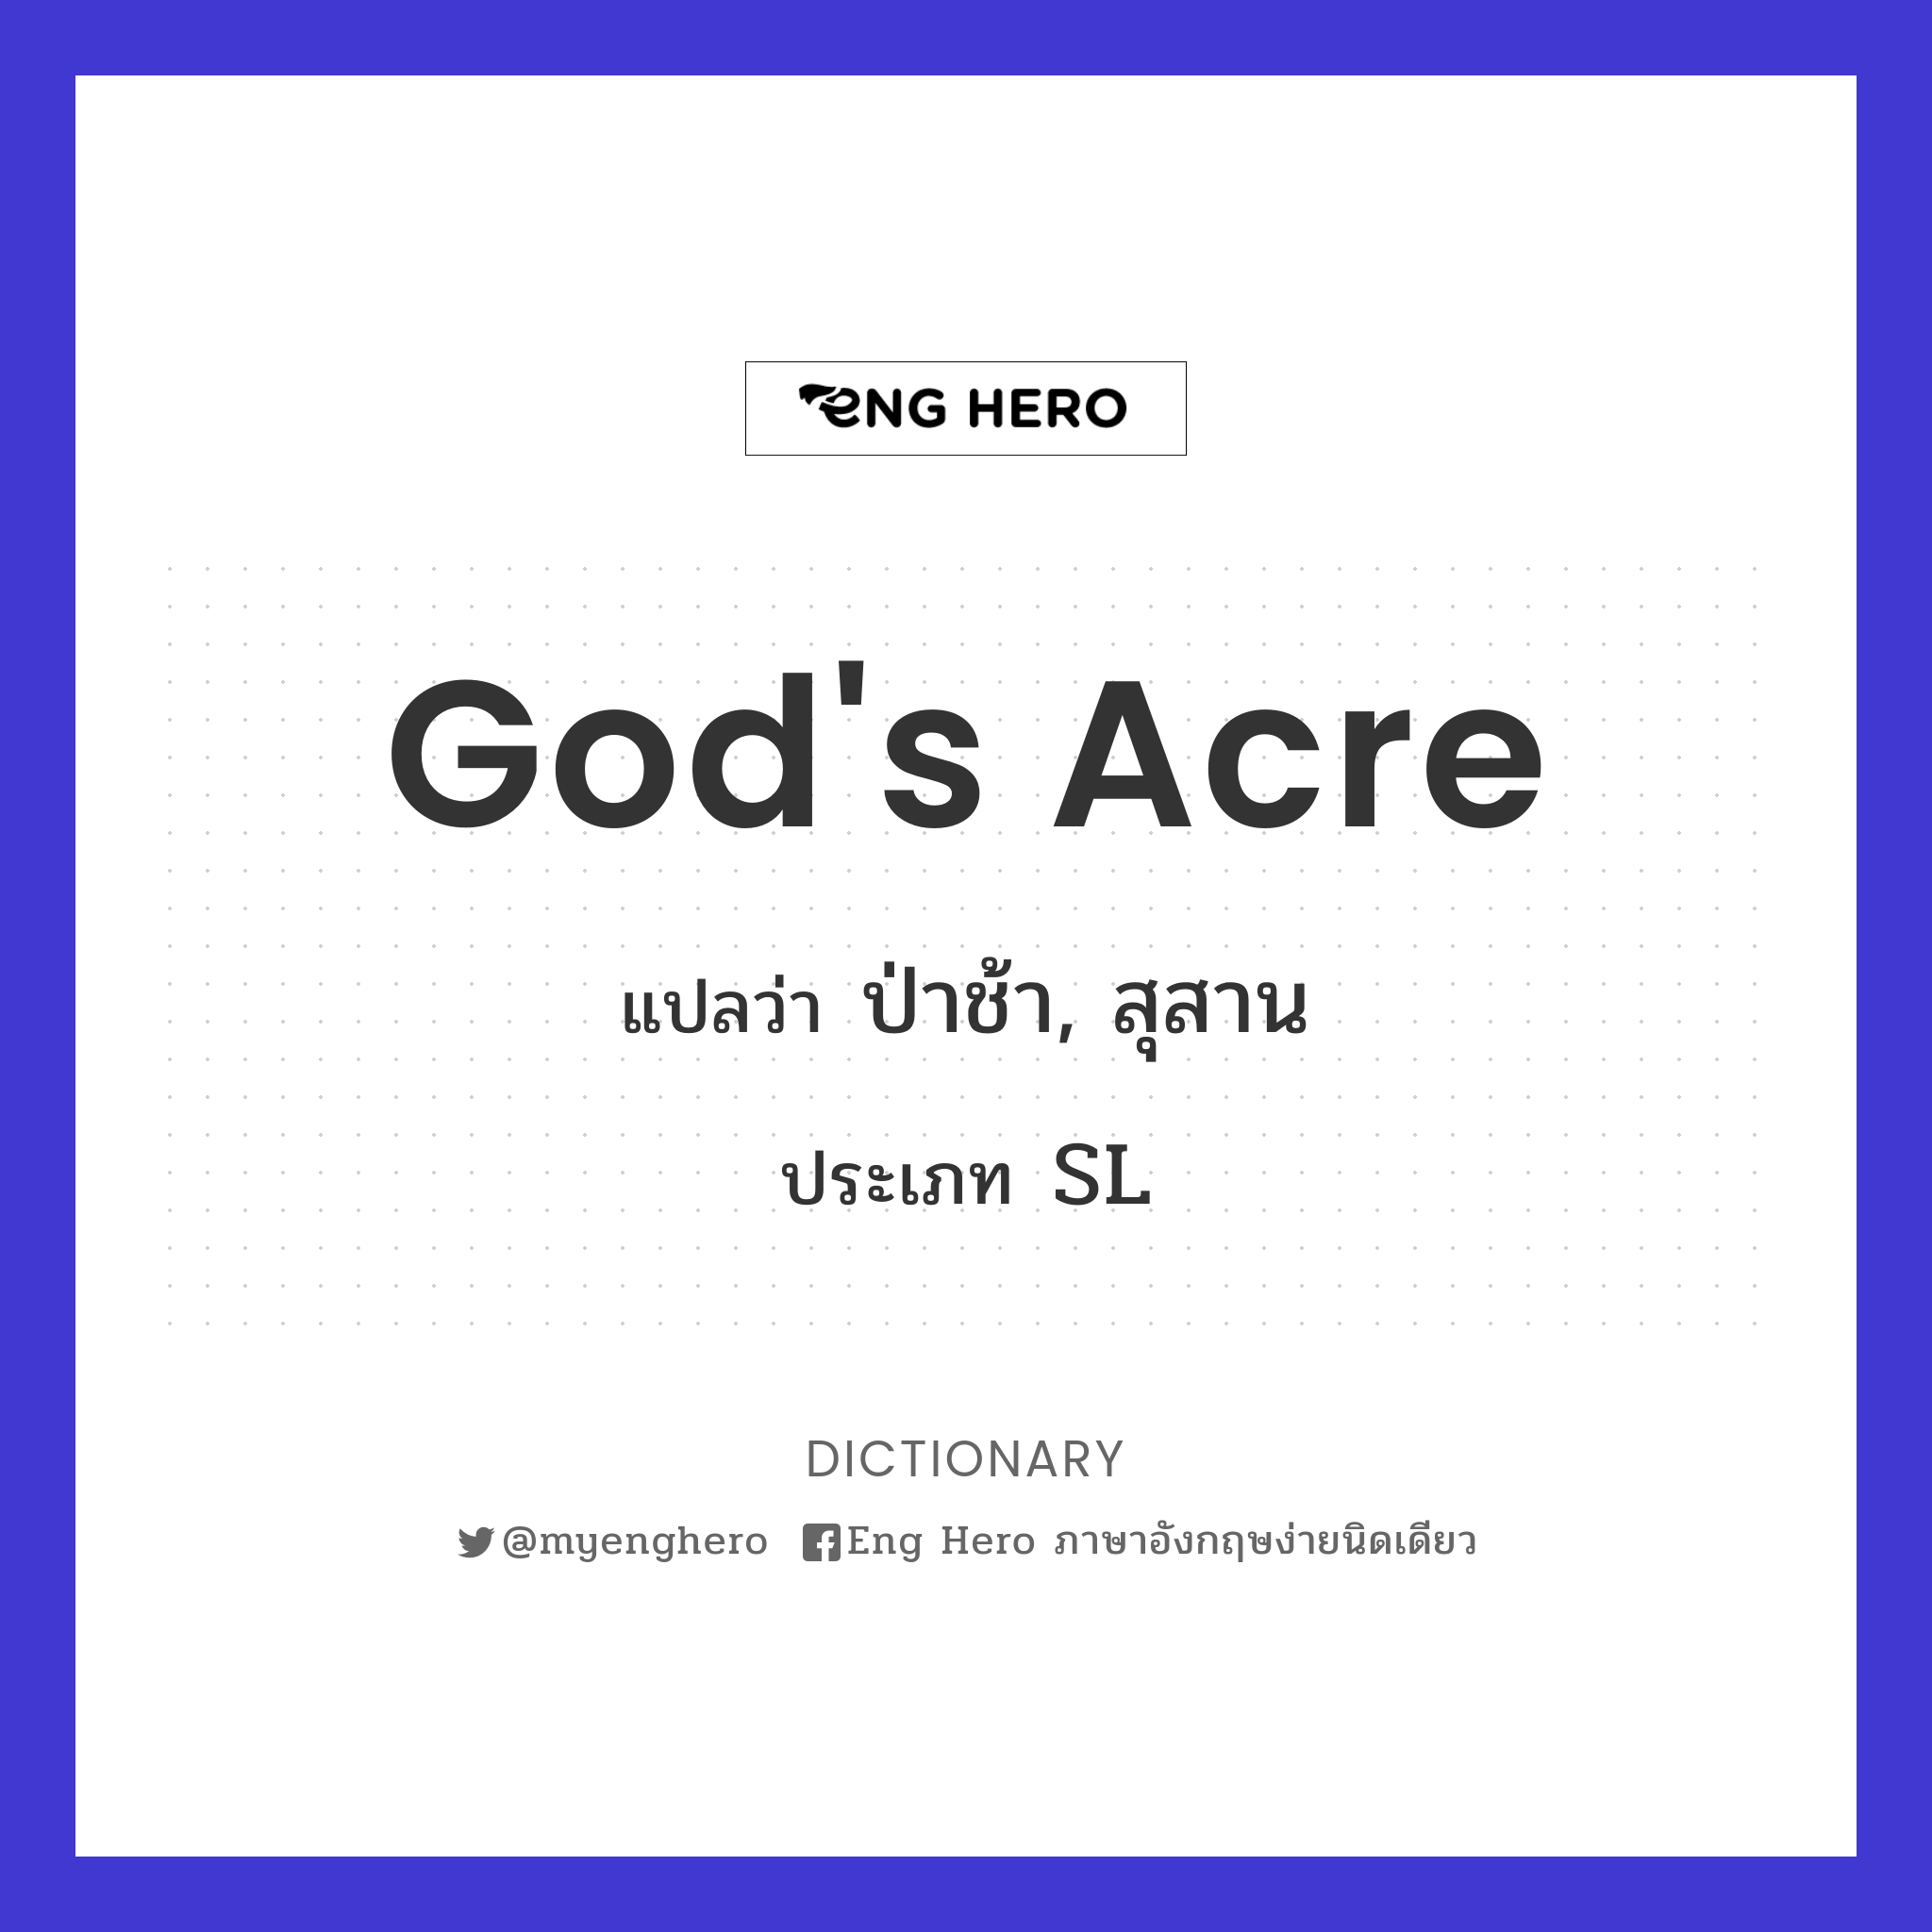 God's acre